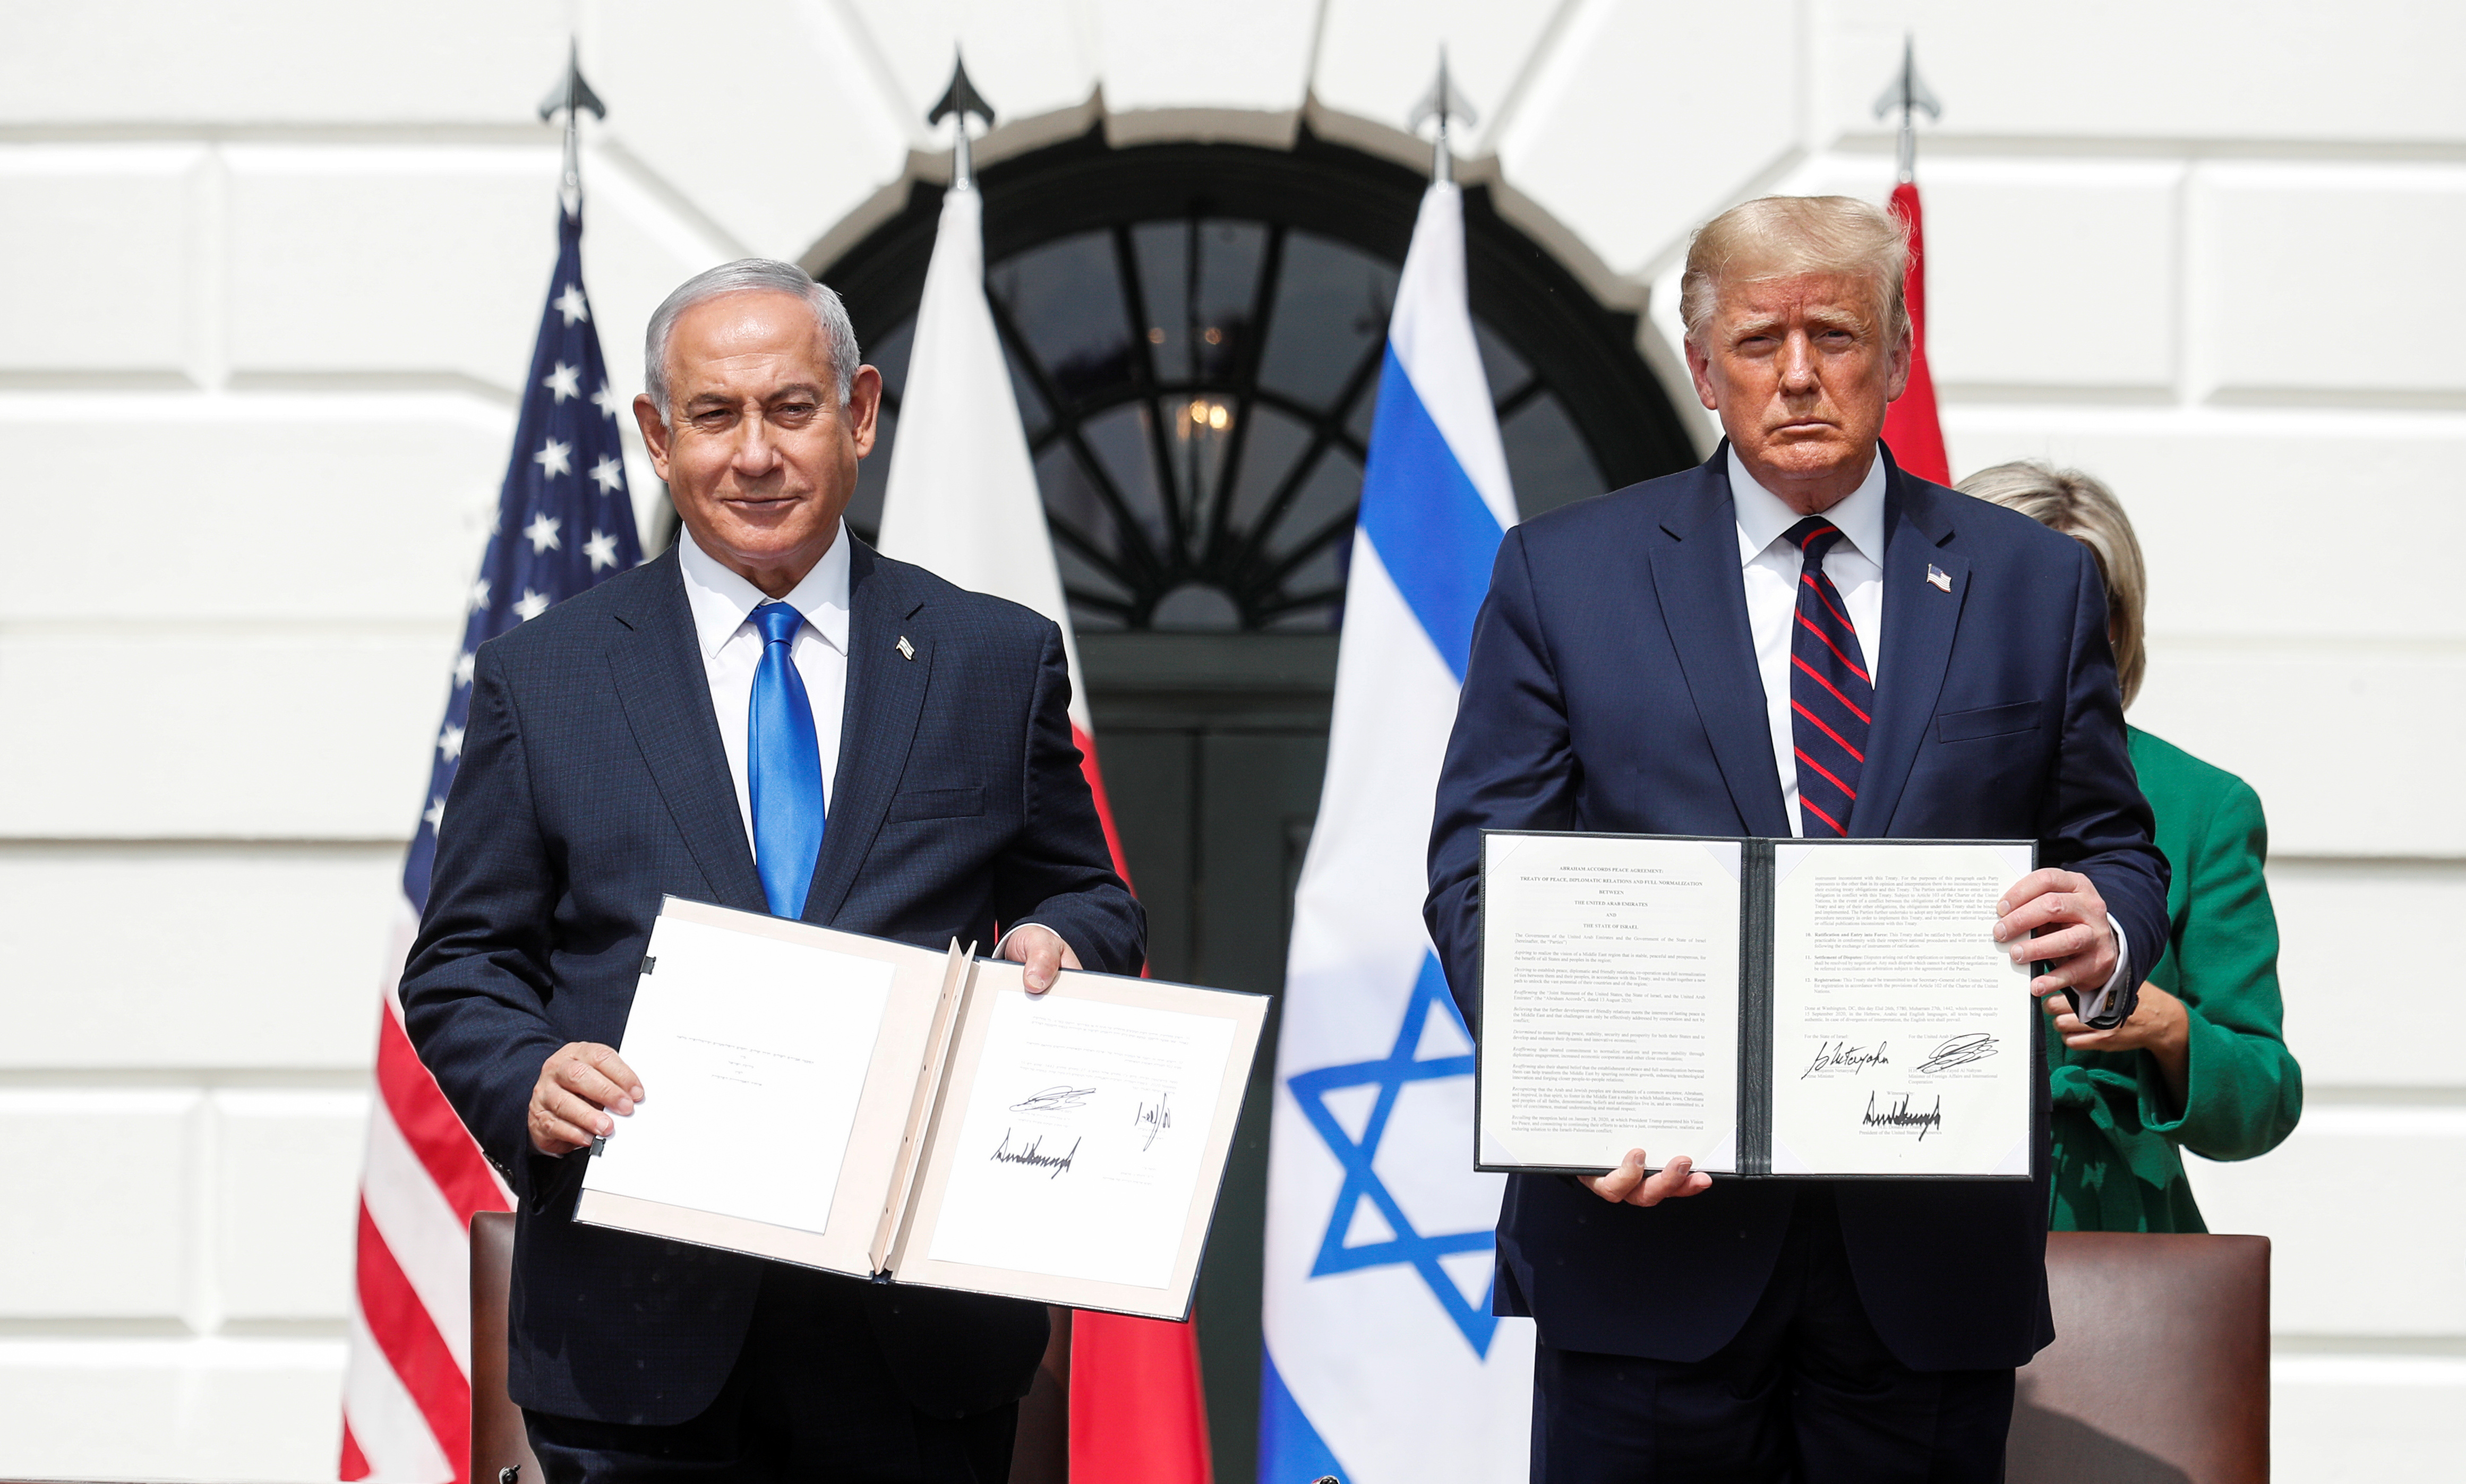 Los palestinos, volverían a las negociaciones de paz si Biden abandona el plan Trump